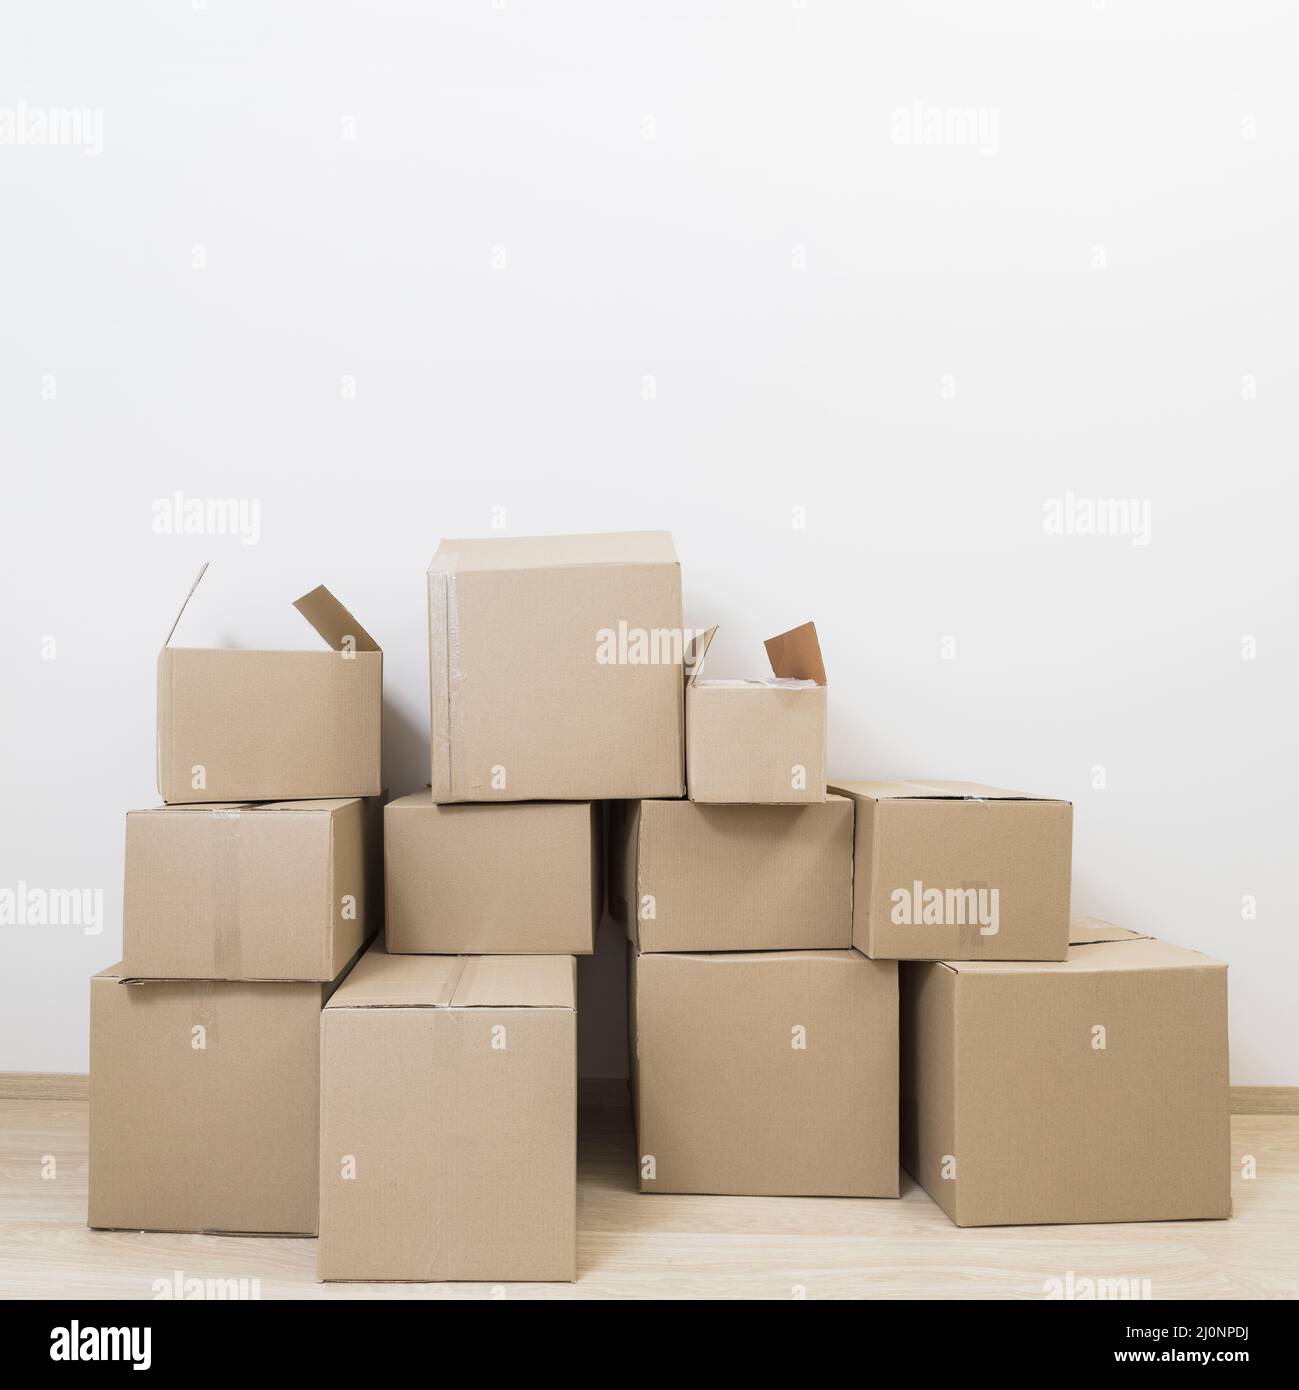 scatole di cartone mobili impilate contro la parete bianca